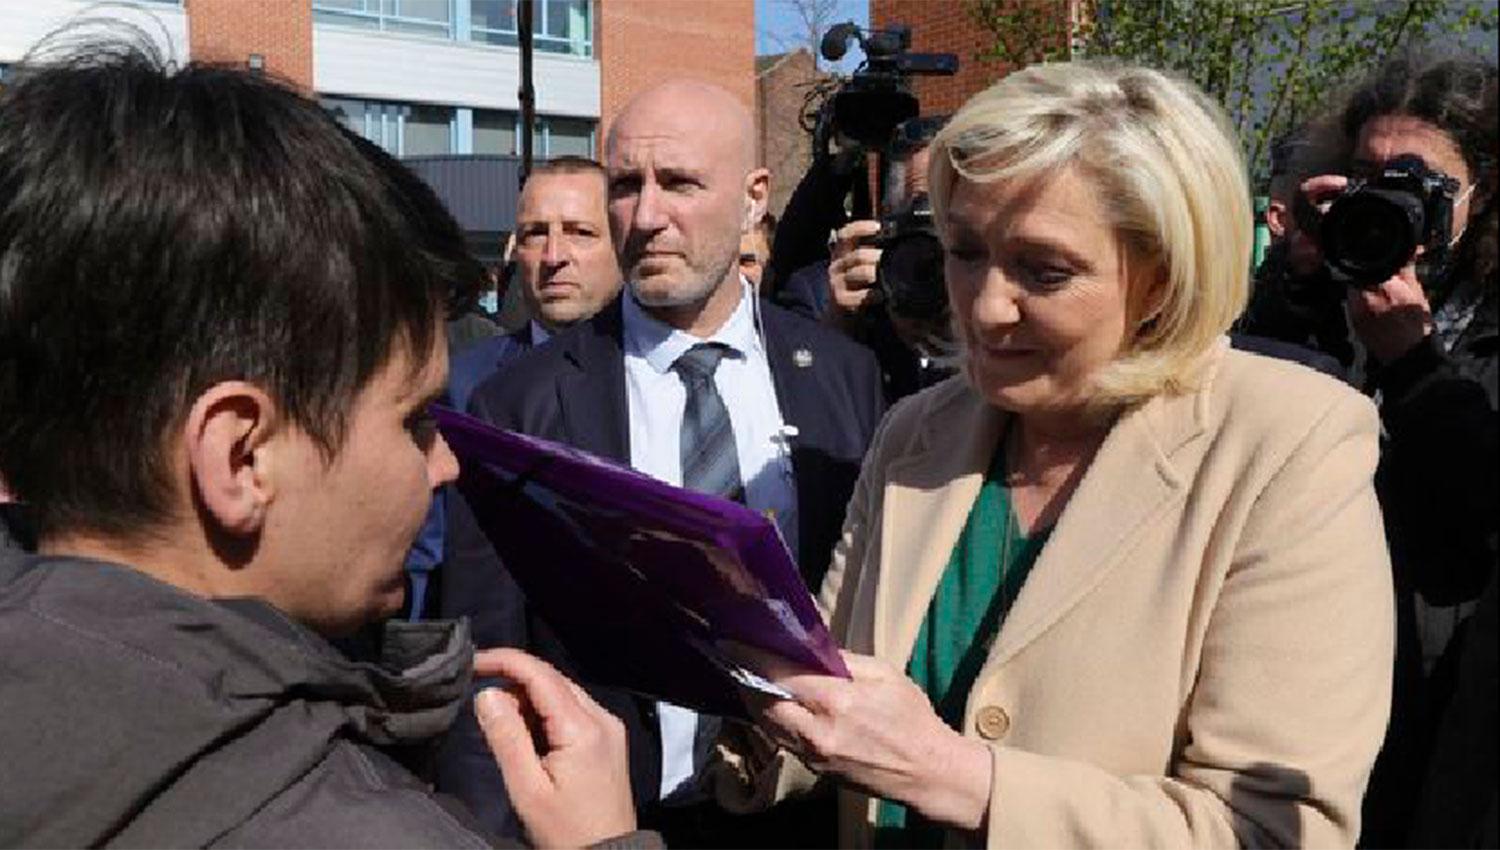 A LA DERECHA. Marine Le Pen lleva su discurso antiinmigrantes pero además levantó la bandera de los problemas sociales que aquejan a los franceses.